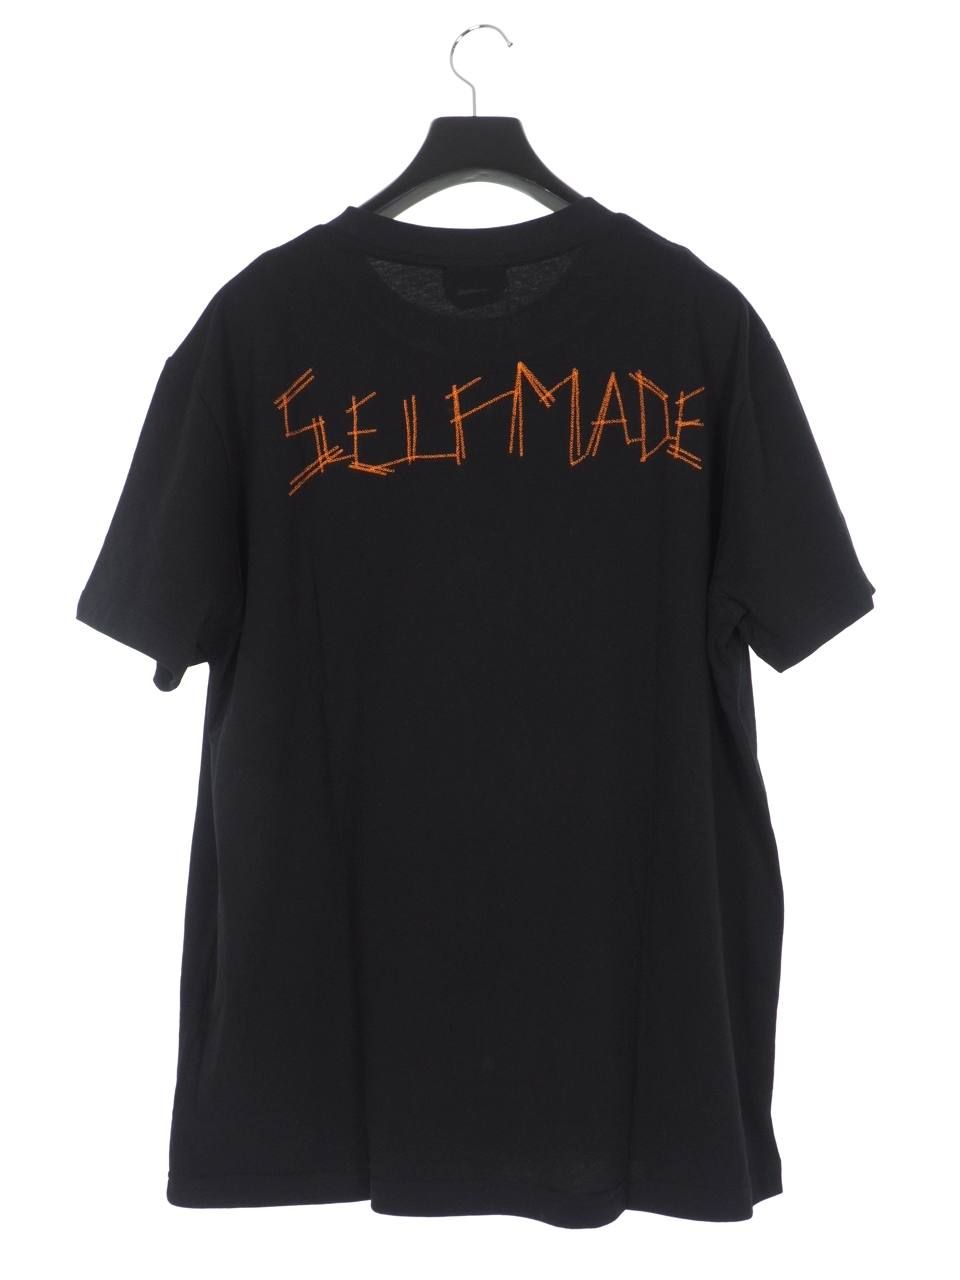 SELF MADE(セルフメイド) 黒Tシャツ